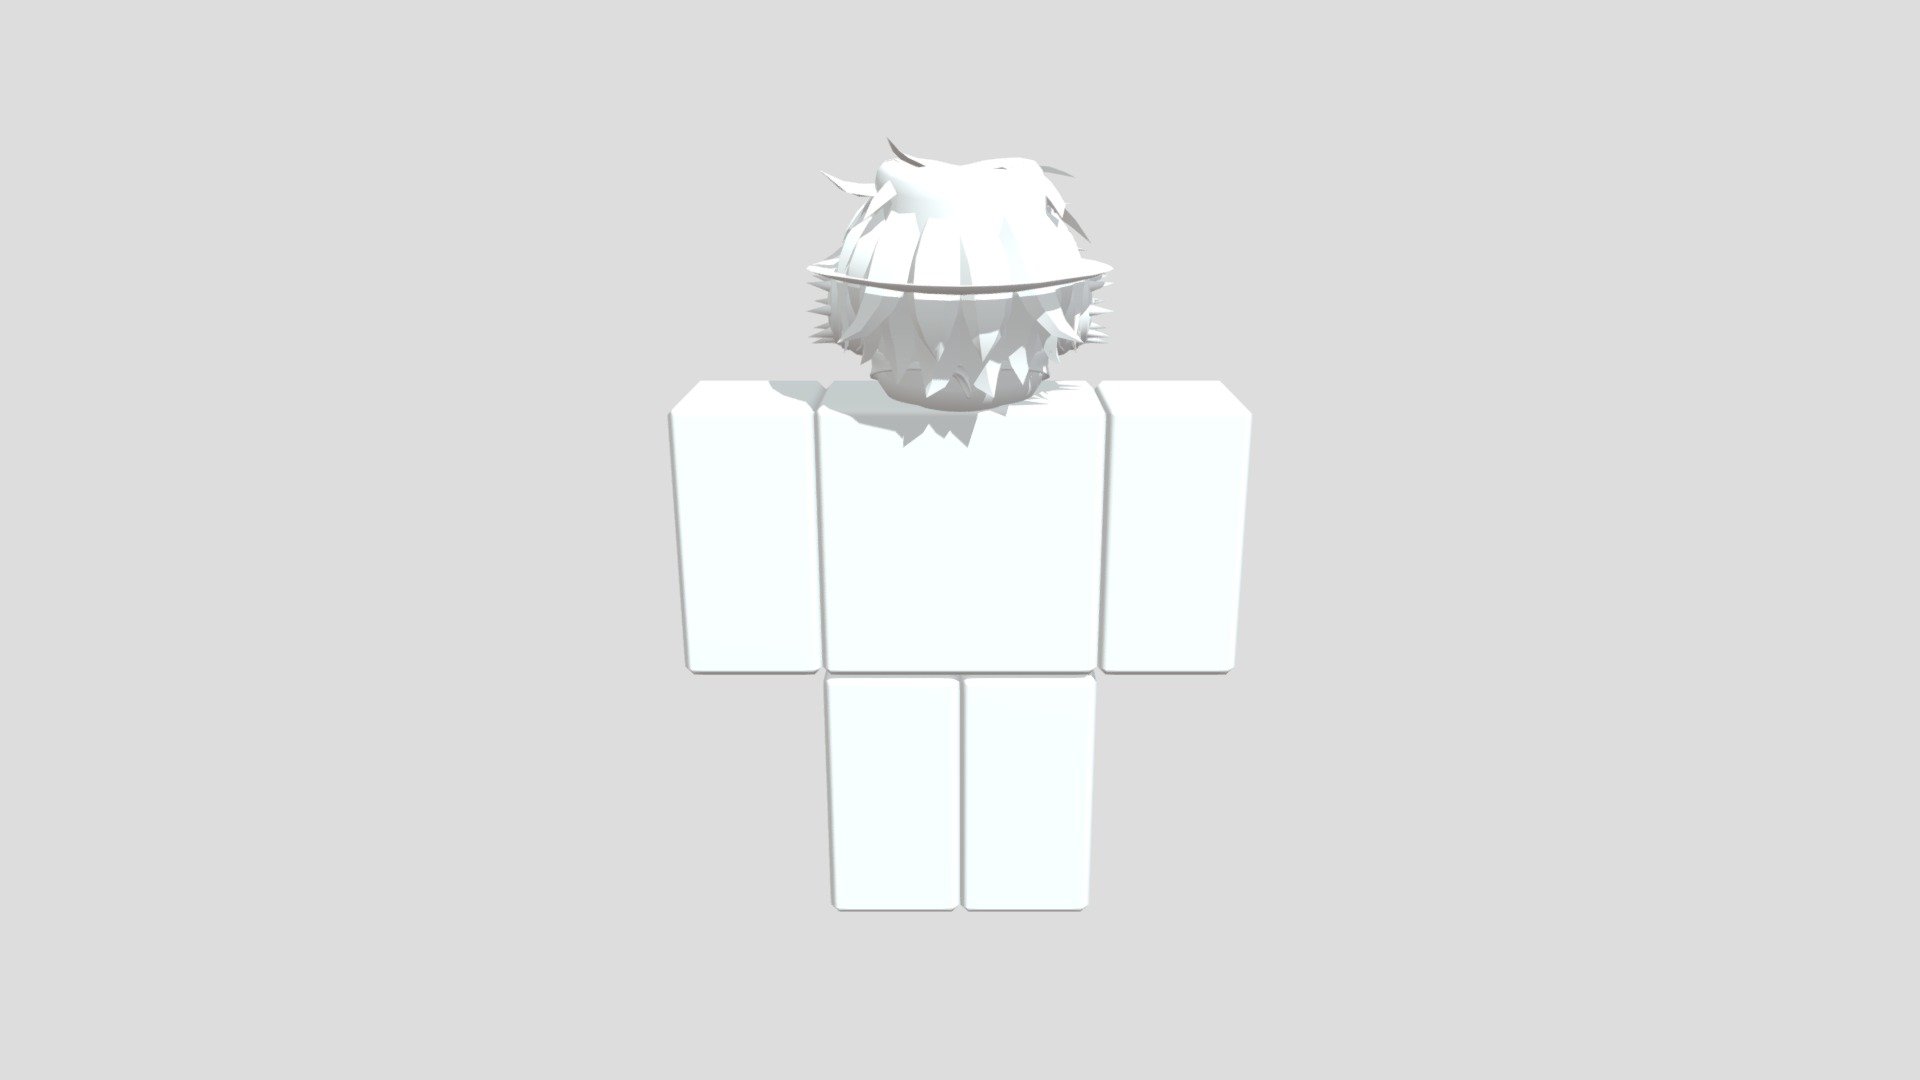 my roblox avatar - Download Free 3D model by Vkdkdsl [7b5d570] - Sketchfab